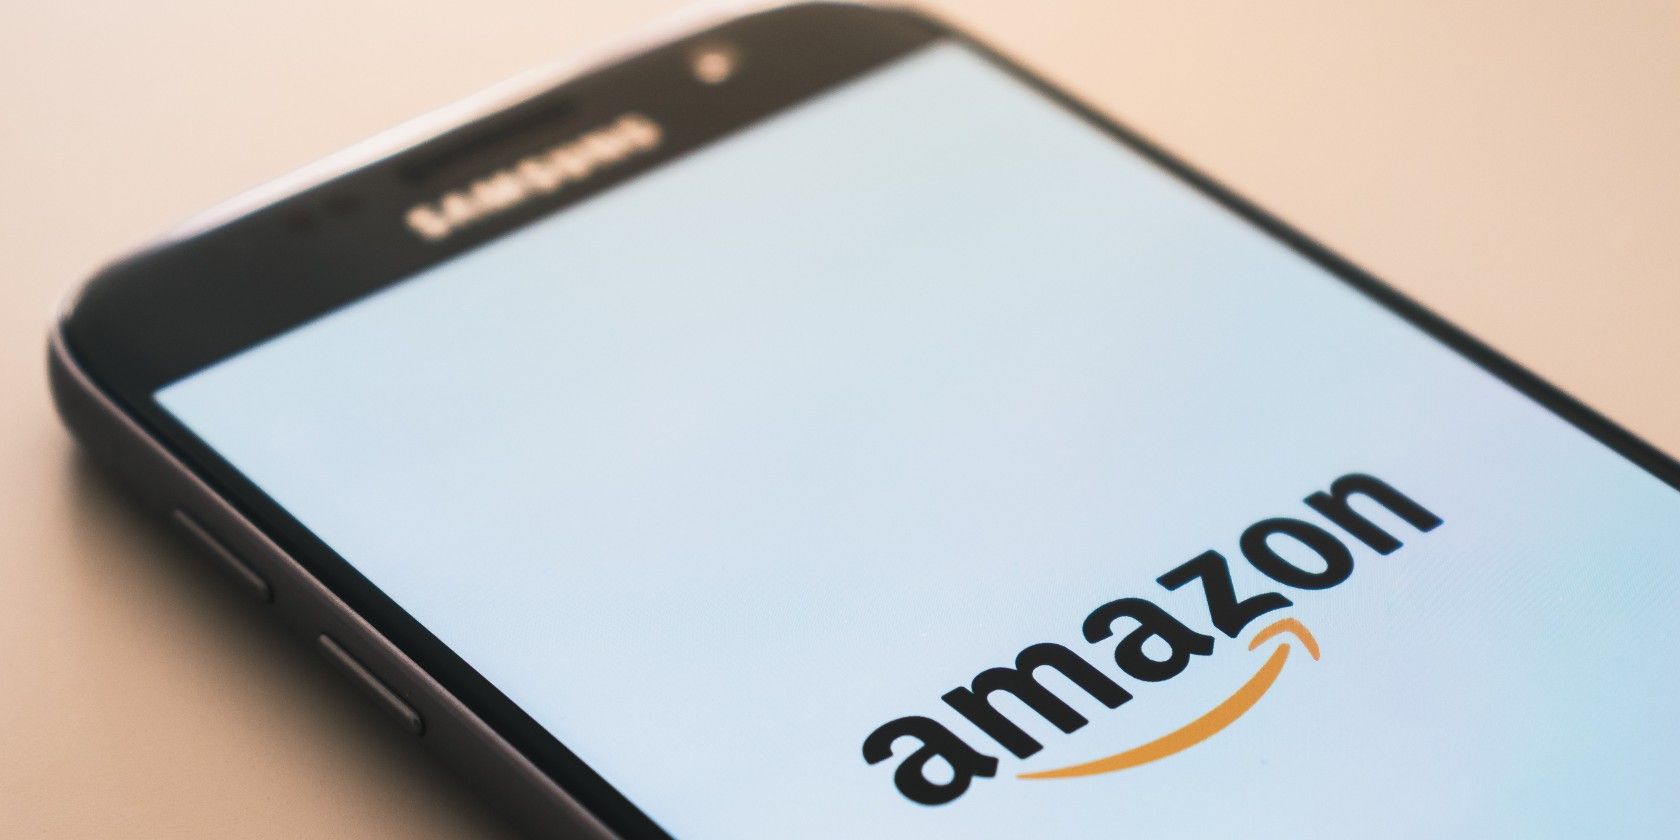 Amazon logo on smartphone